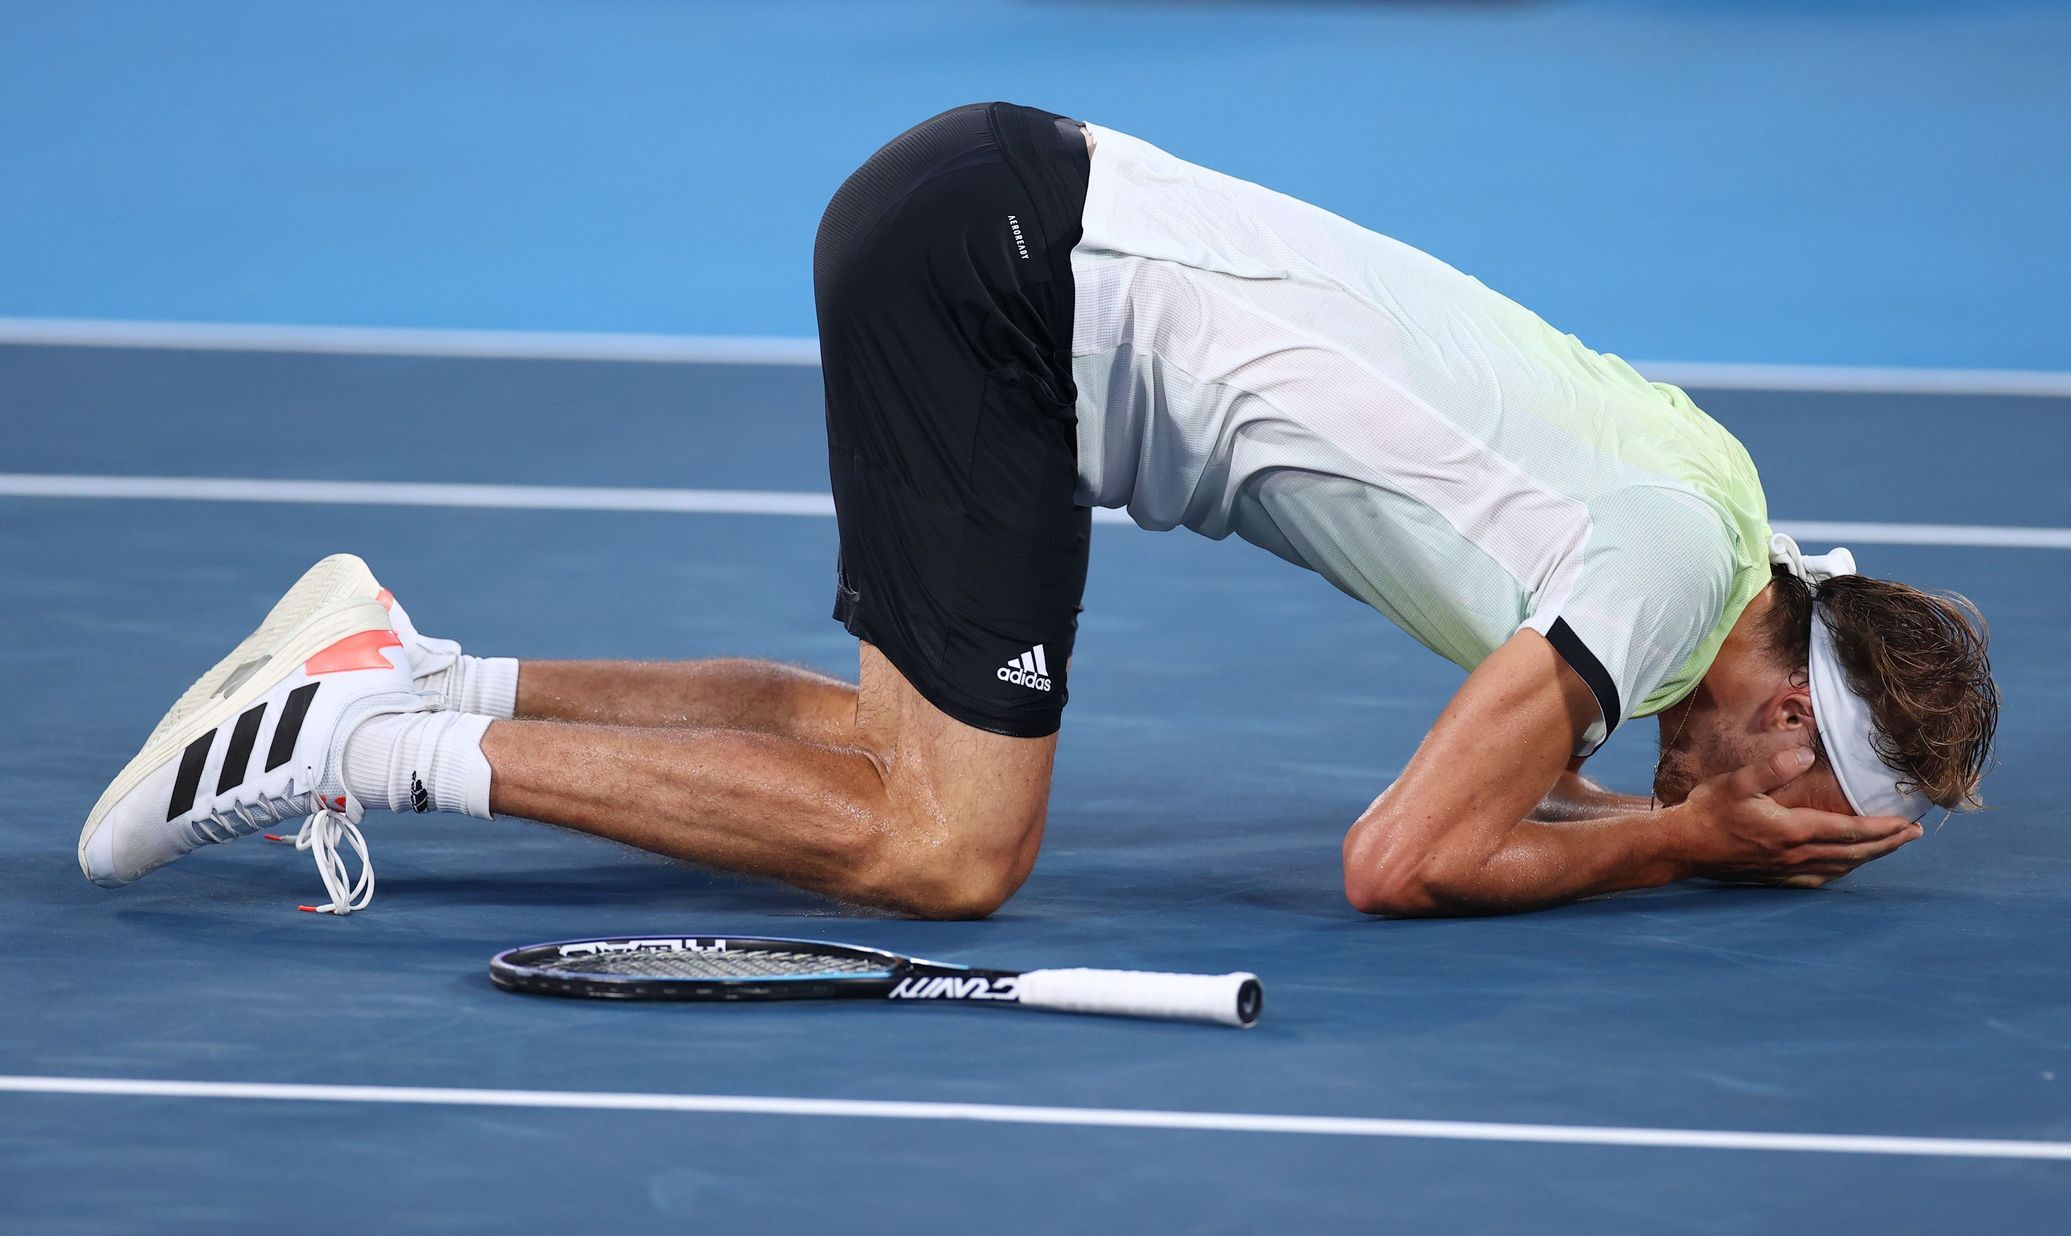 Der deutsche Tennisspieler Zverev besiegt den Russen Hatchanov im olympischen Finale glatt